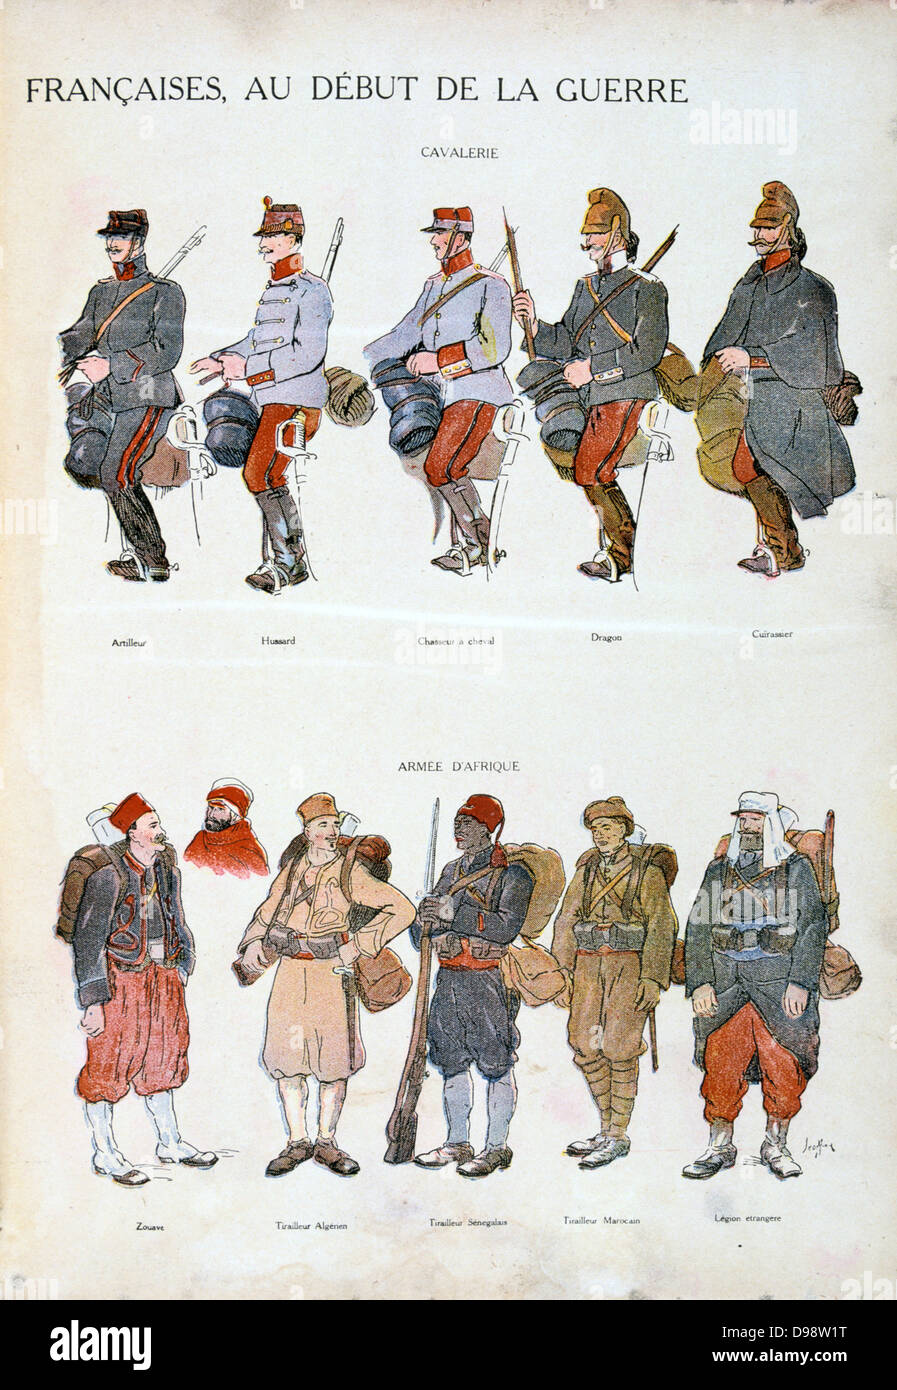 L'uniforme militaire français pendant la Première Guerre mondiale, 1914-1918. Top : la cavalerie. En bas : des forces africaines. Impression couleur Banque D'Images